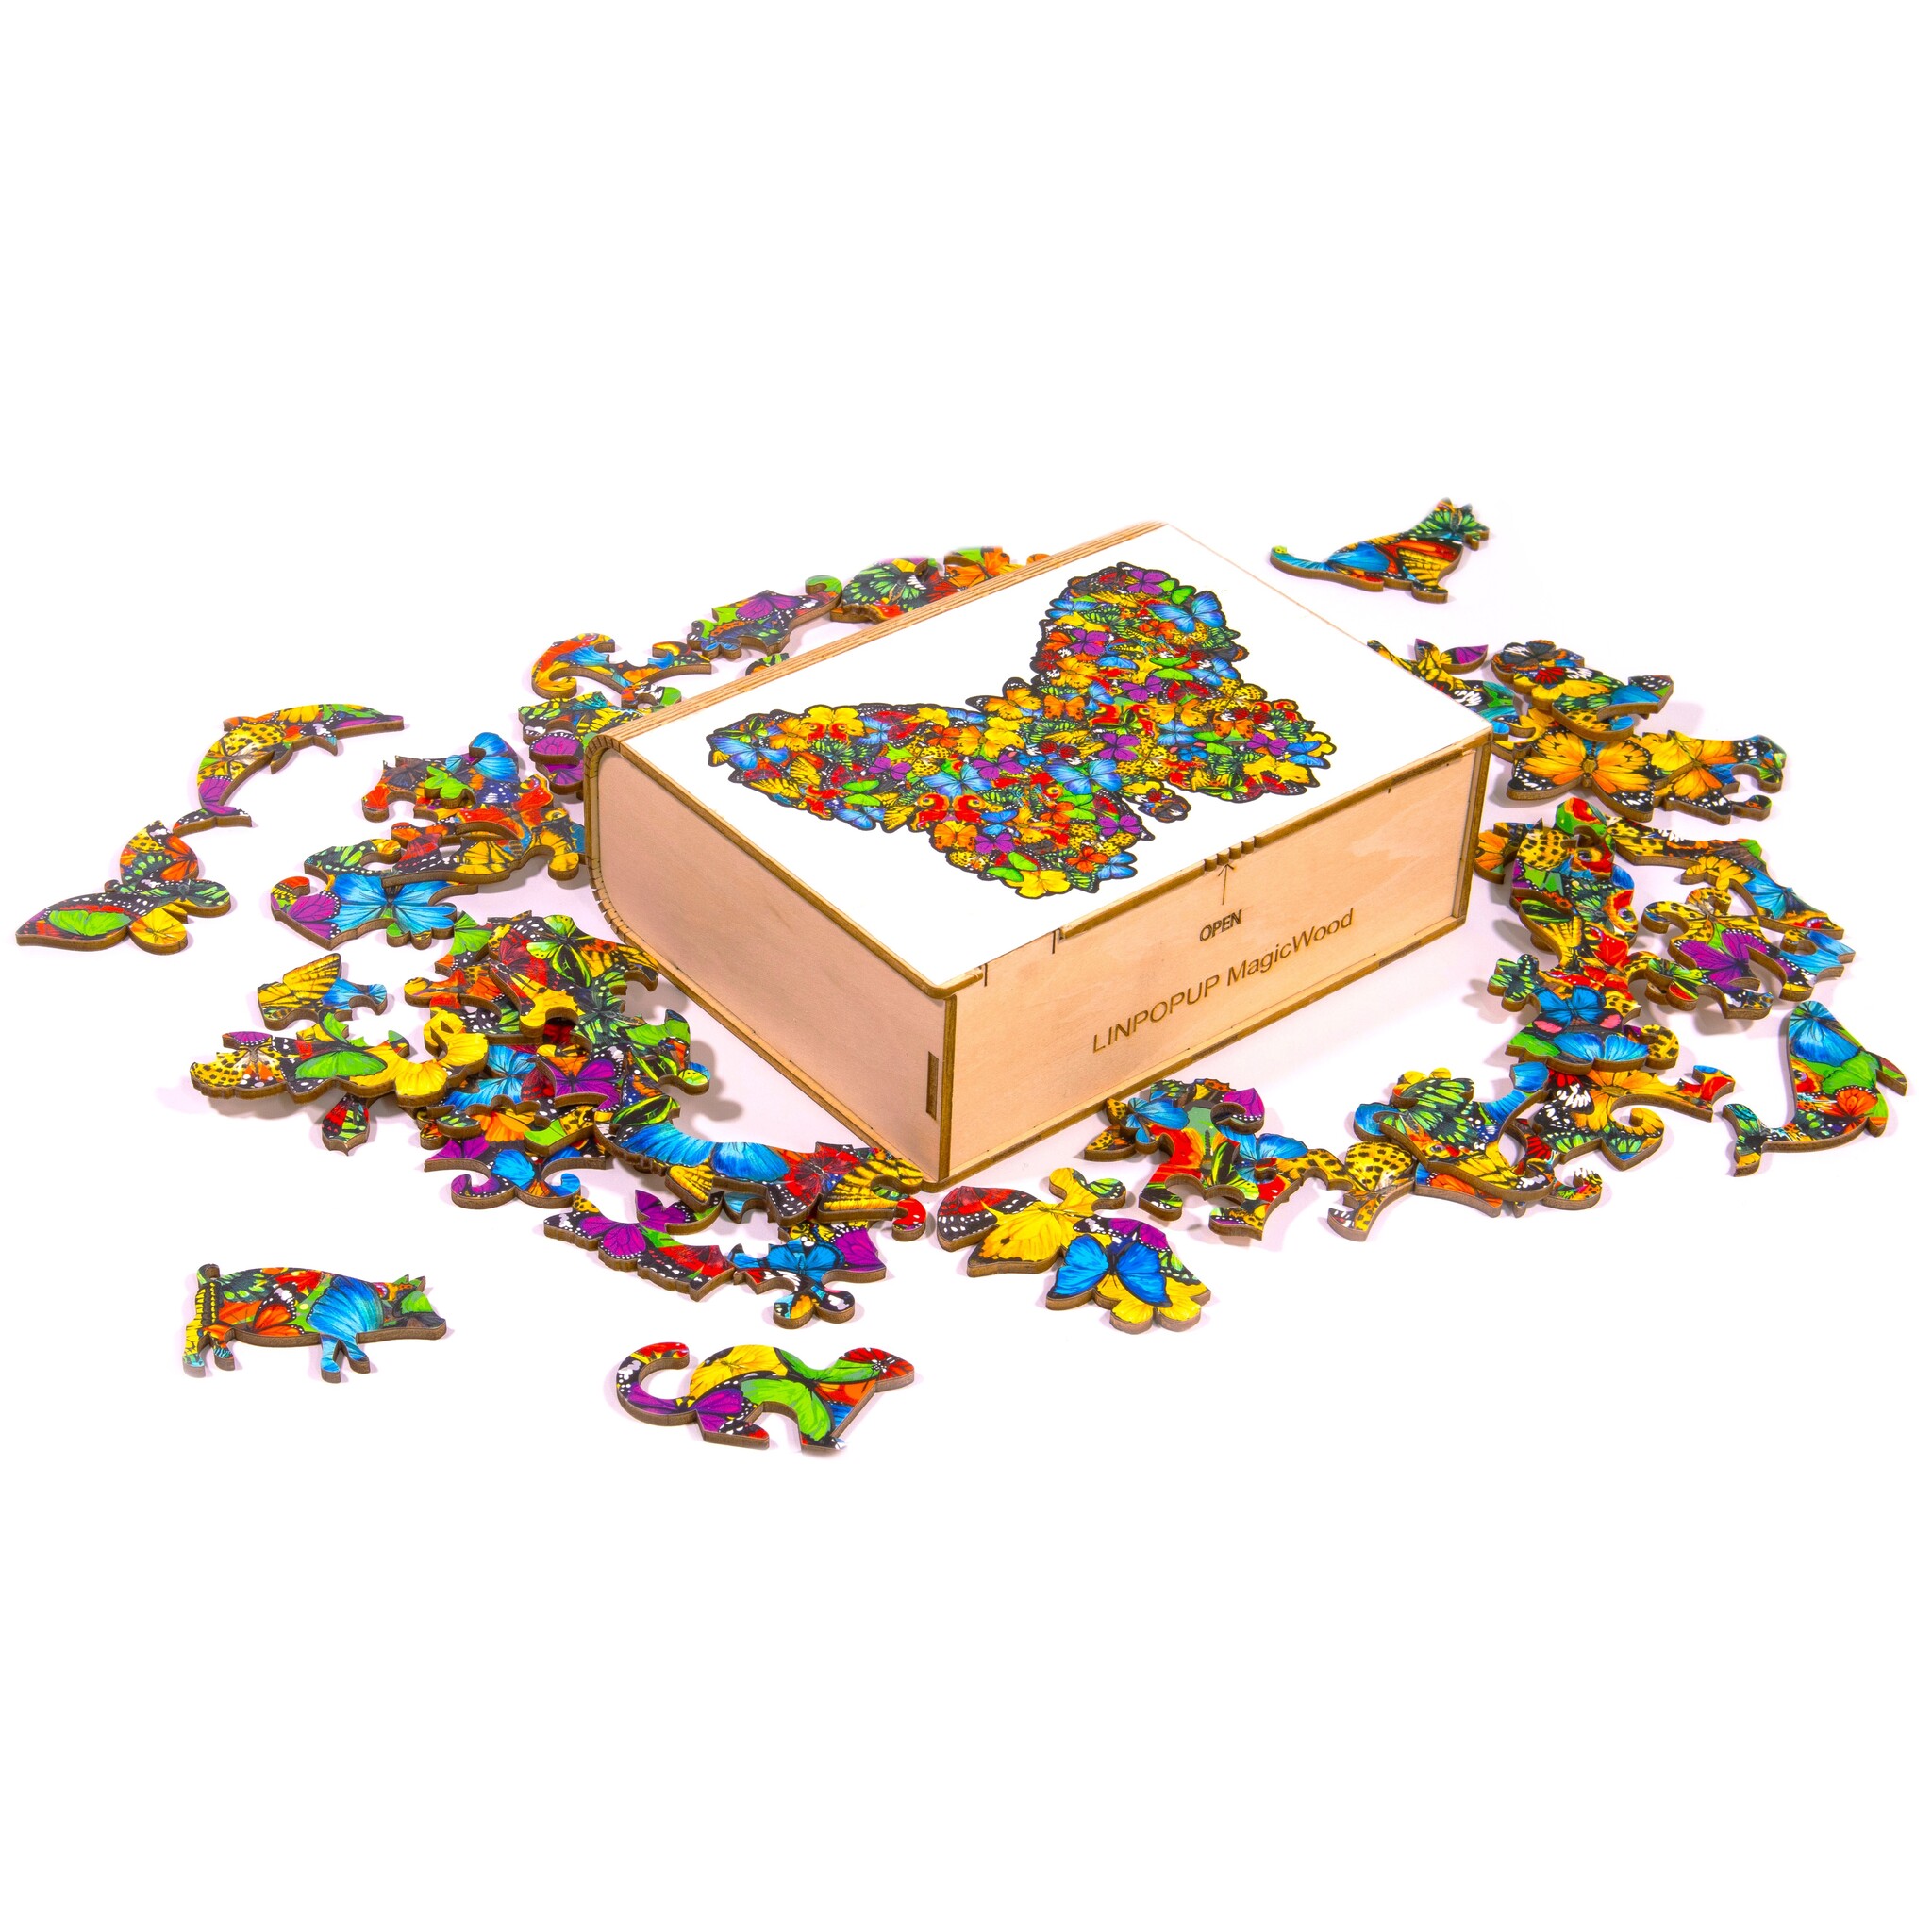 MagicWood Holzpuzzle für Erwachsene und Kinder, mit einzigartigen Tierform Puzzleteile, mit hochwertigem Geschenkbox aus Holz, als Geschenk zum Geburtstag, zur Einschulung, Holz Puzzle Hund, Schmetterling, N003